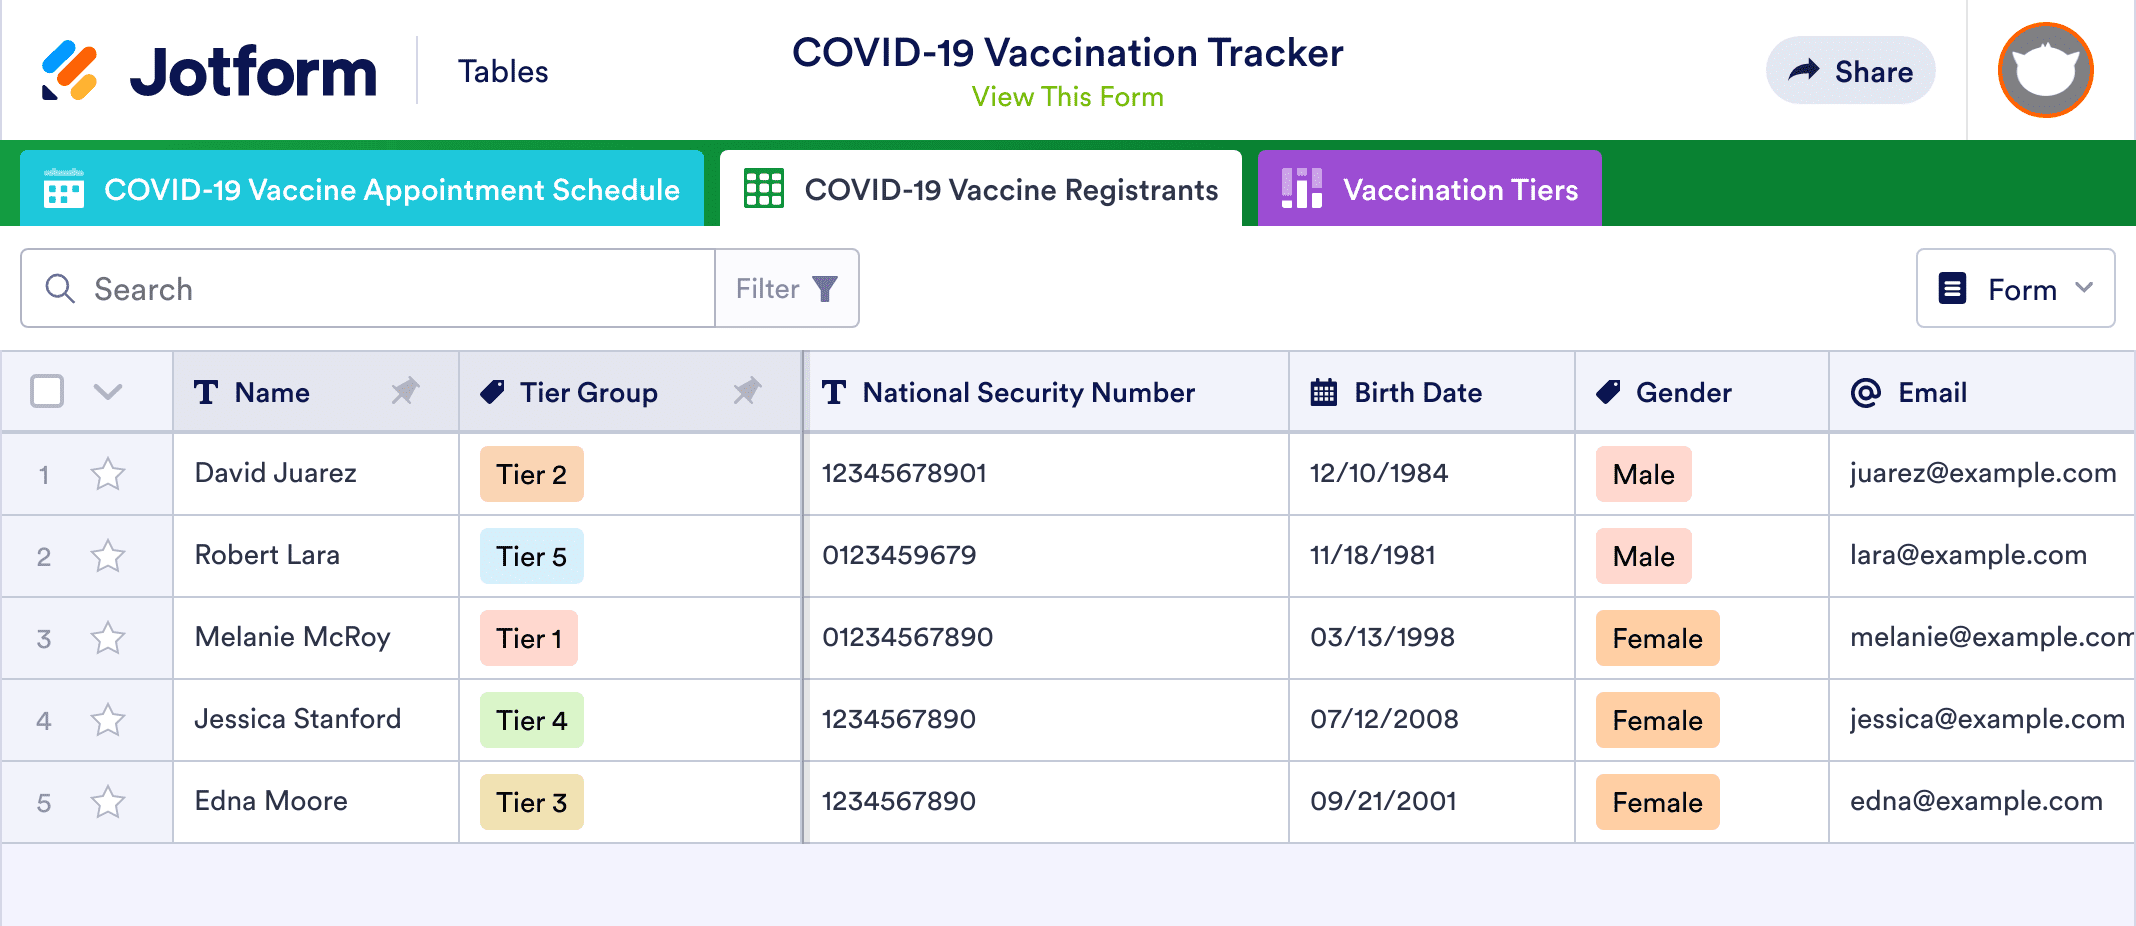 COVID-19 Vaccination Tracker